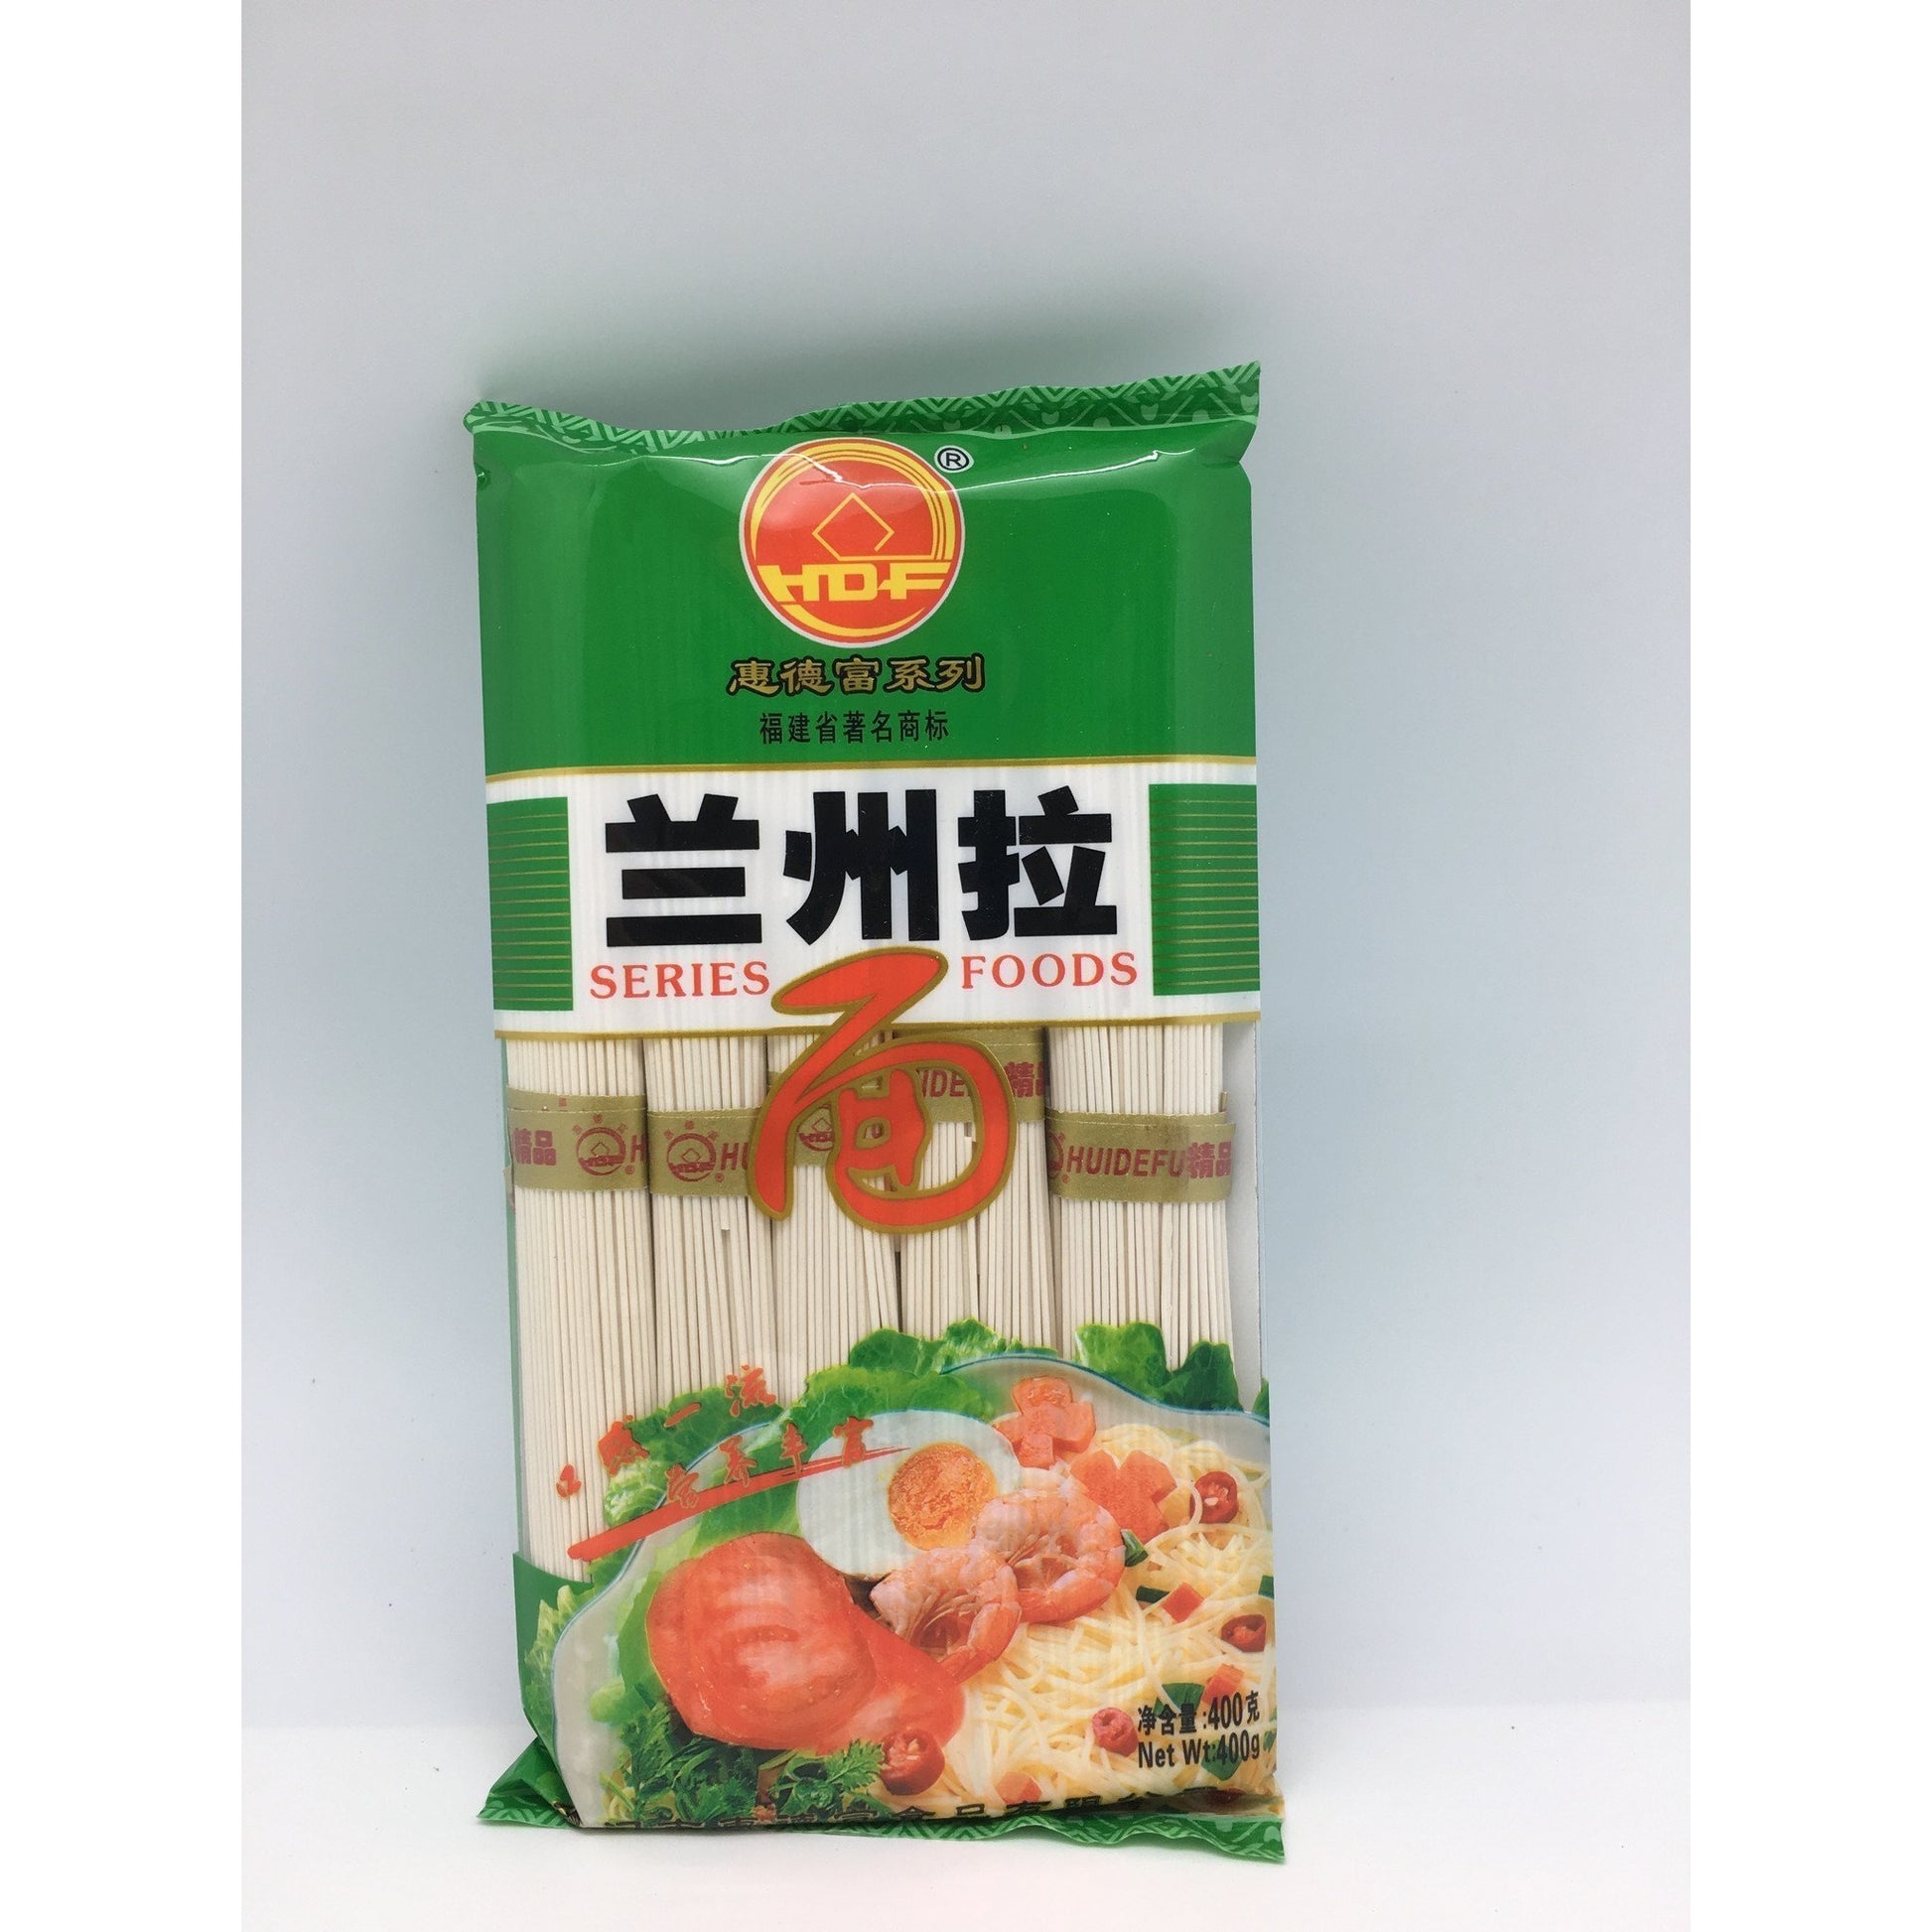 N016NR HDF Brand - Dried Noodles 375g - 18 bags / 1CTN - New Eastland Pty Ltd - Asian food wholesalers